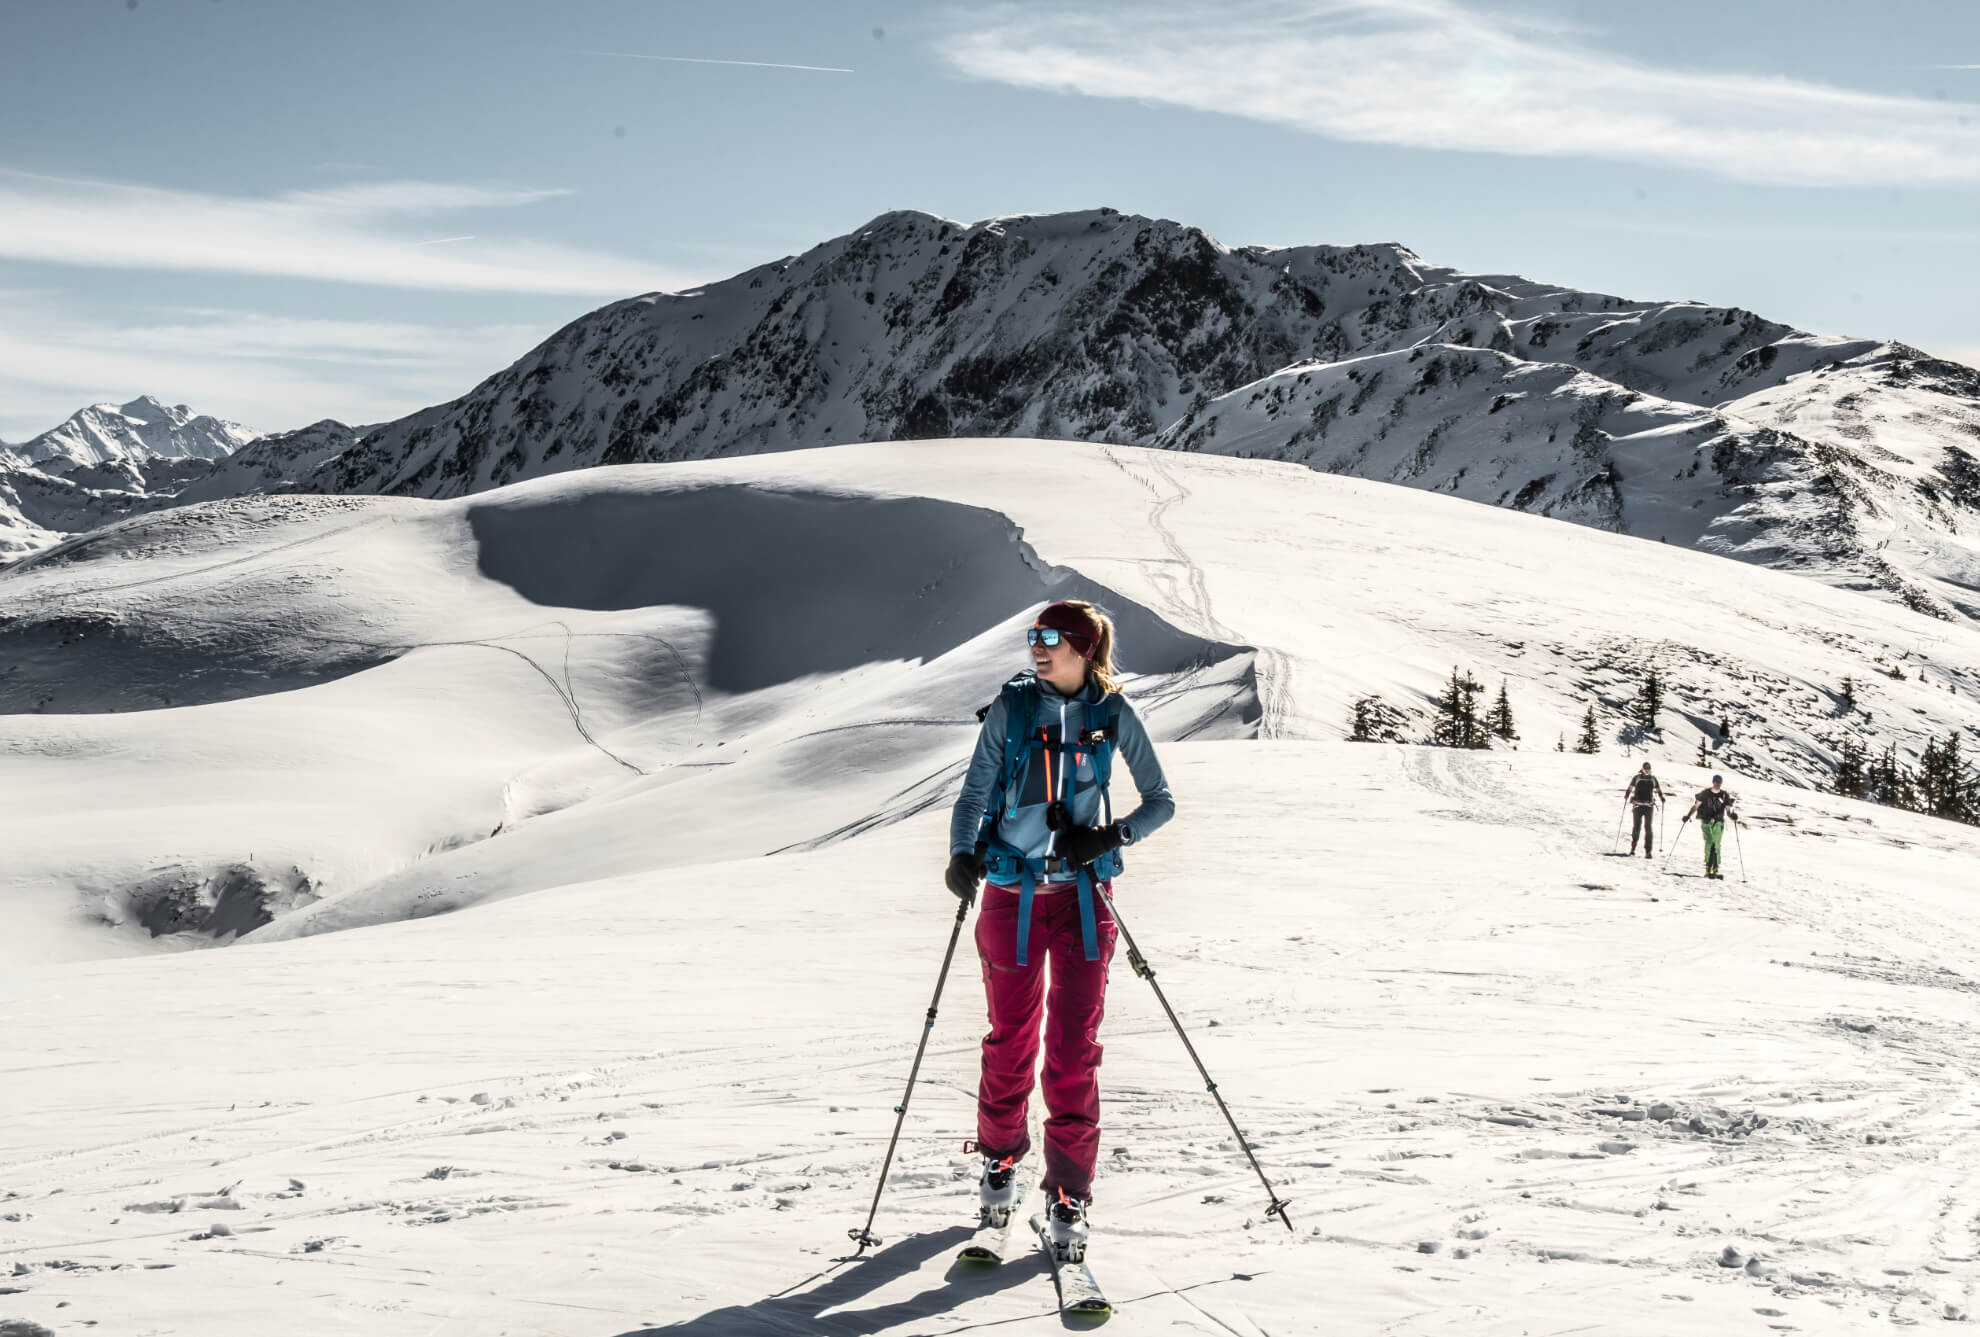 eine hübsche blonde Frau mit Skitourenausrüstung in mitten einer verschneiten Berglandschaft kurz vor dem Gipfel. Im Hintergrund ist eine Wechte zu sehen, die einen Schatten auf die Aufstiegsspur wirft. Es ist ein Sonniger Tag.